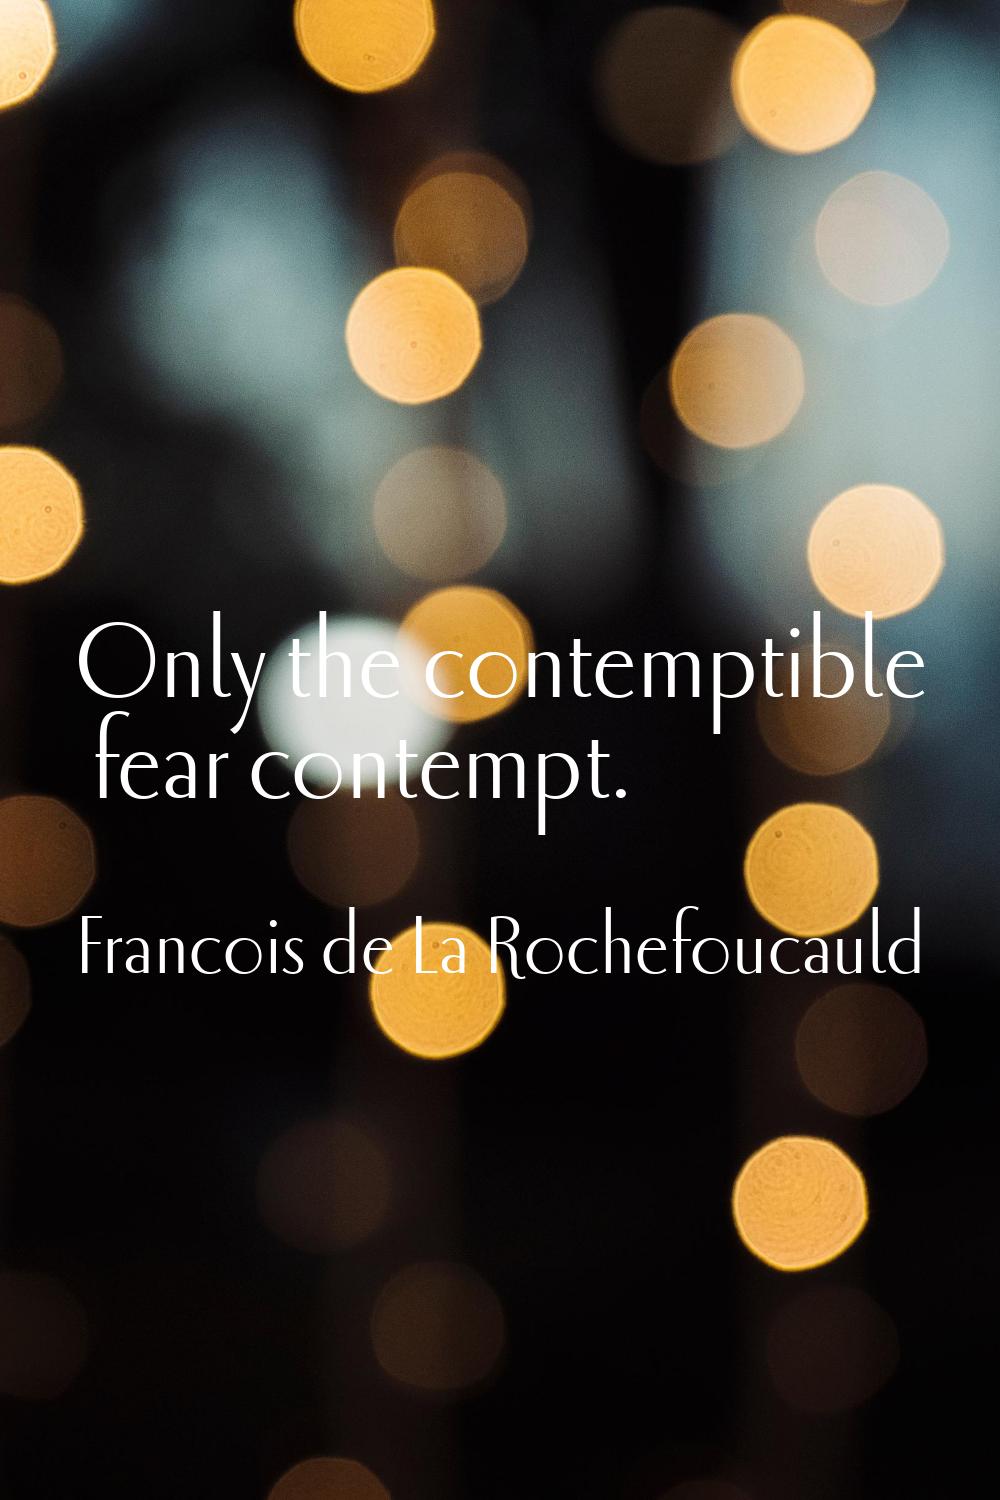 Only the contemptible fear contempt.